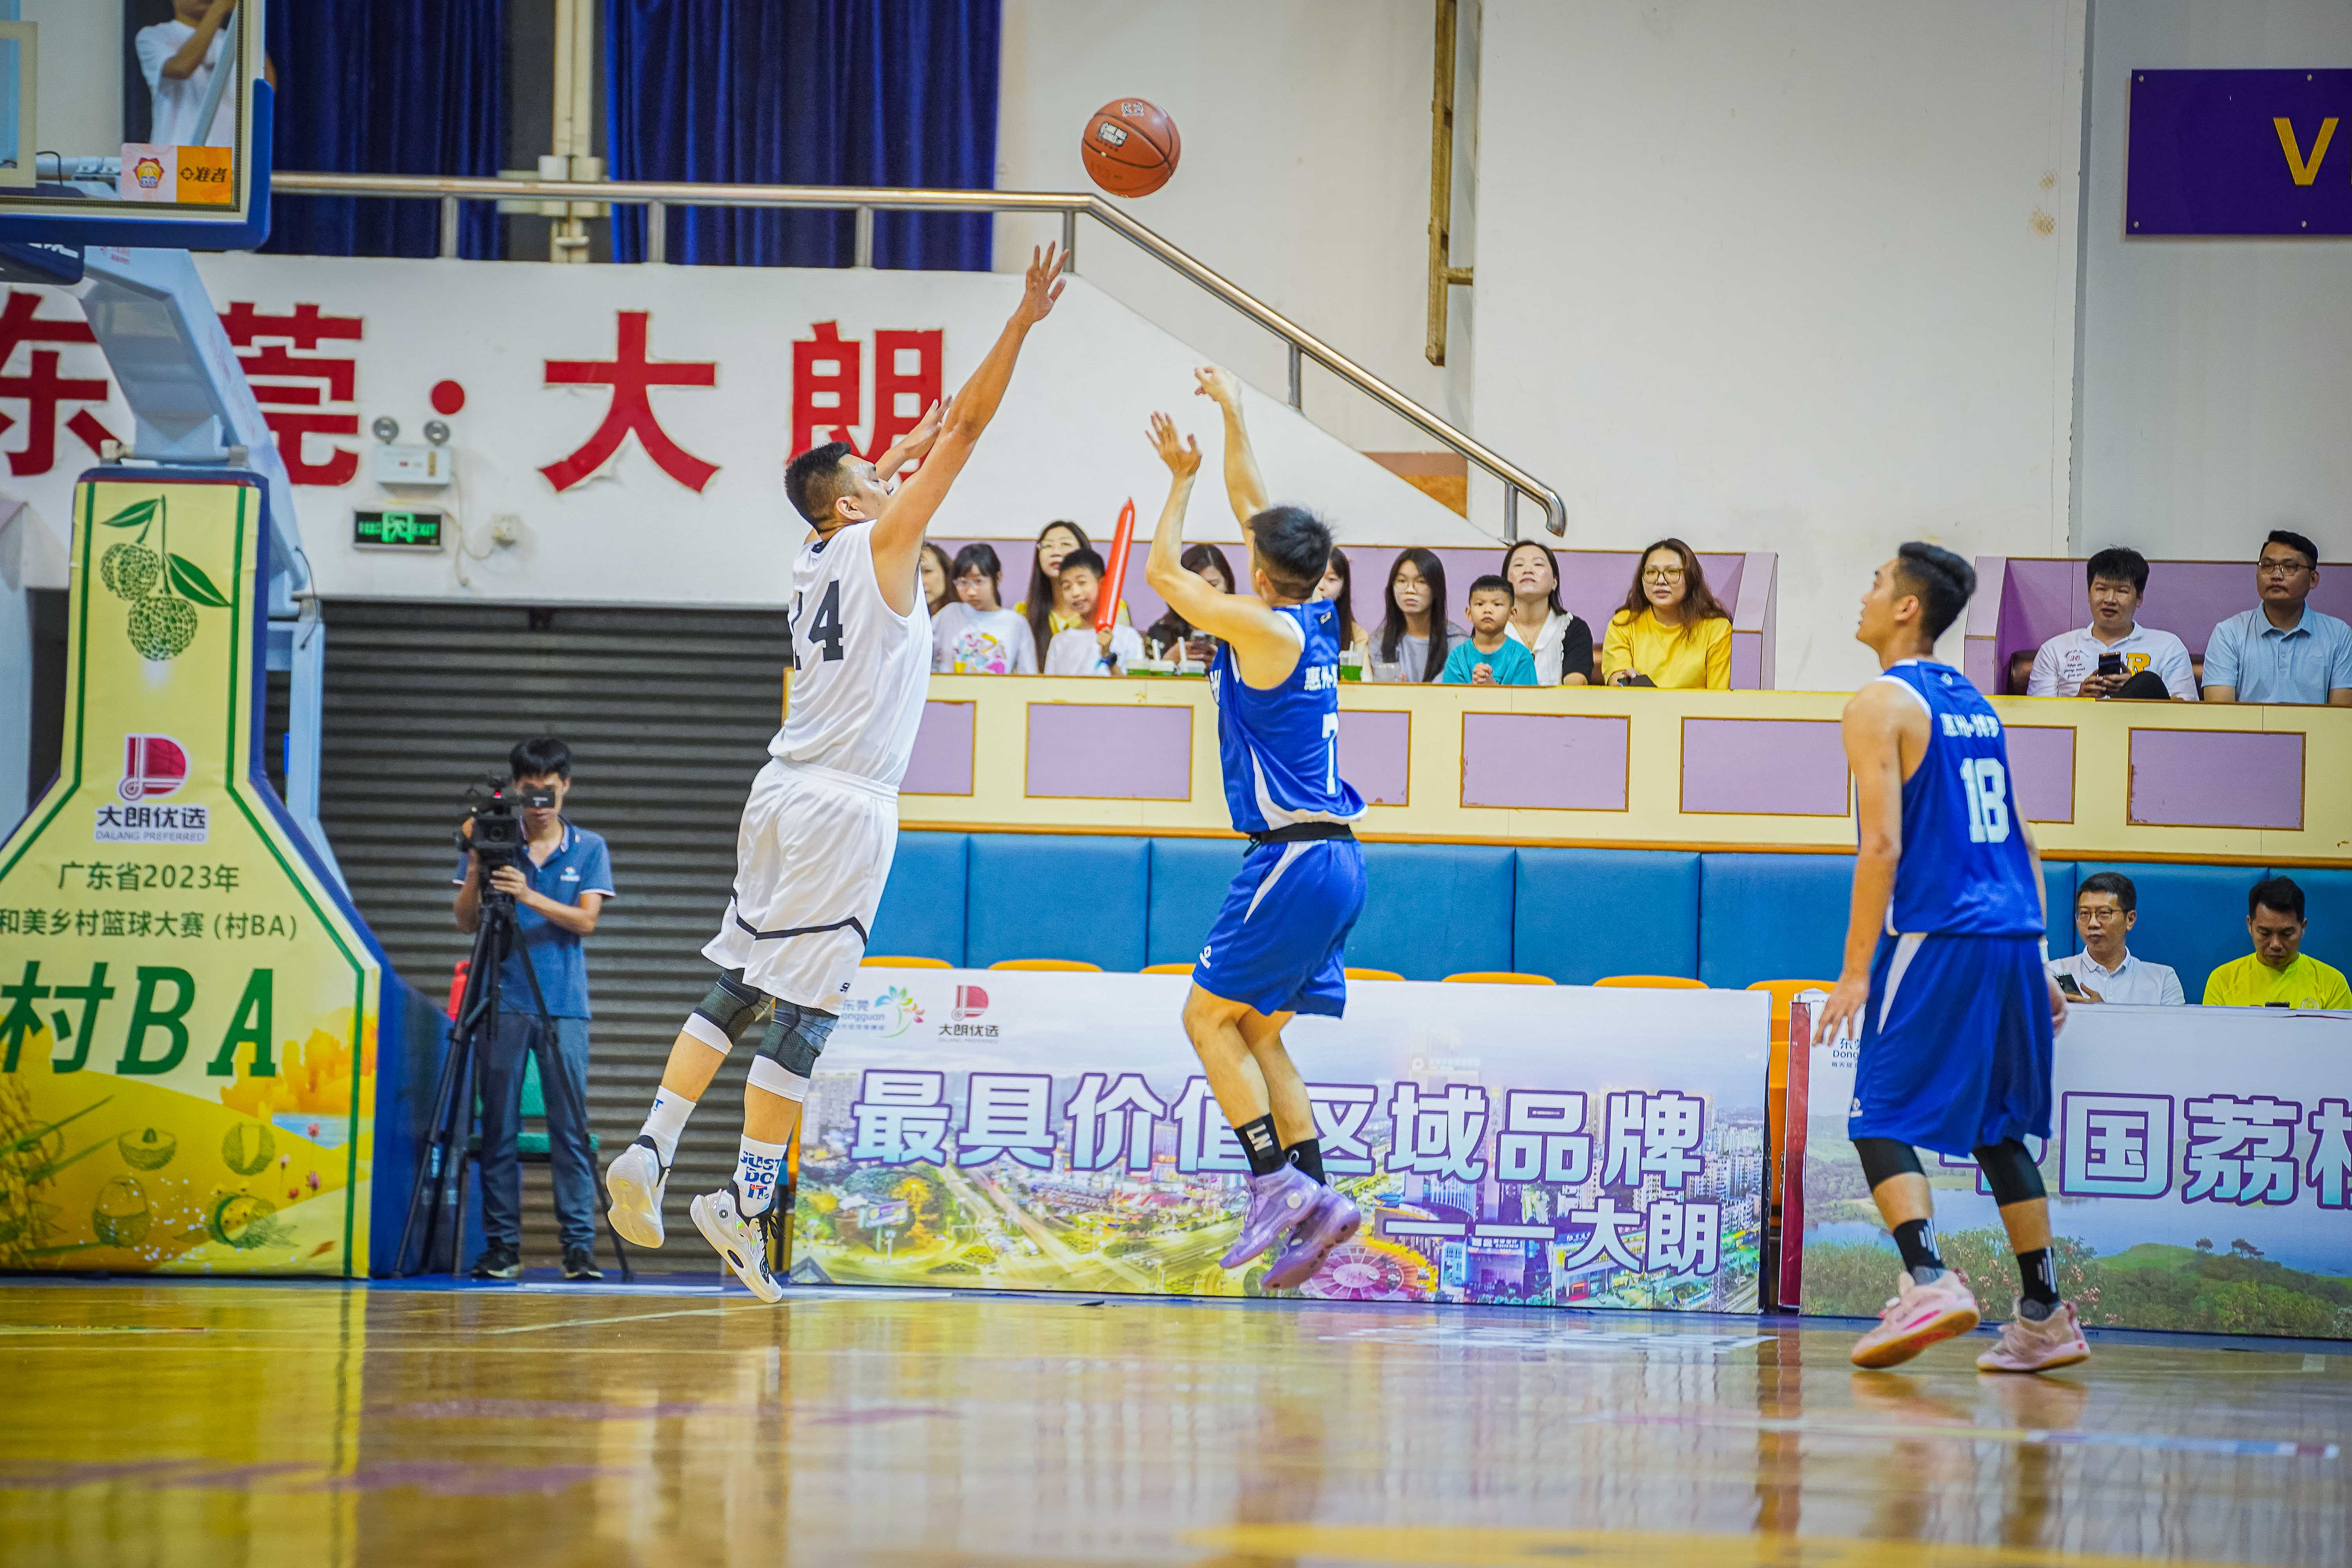 本次比賽致力於促進籃球文化在村鎮的普及。廣東省籃球協會供圖